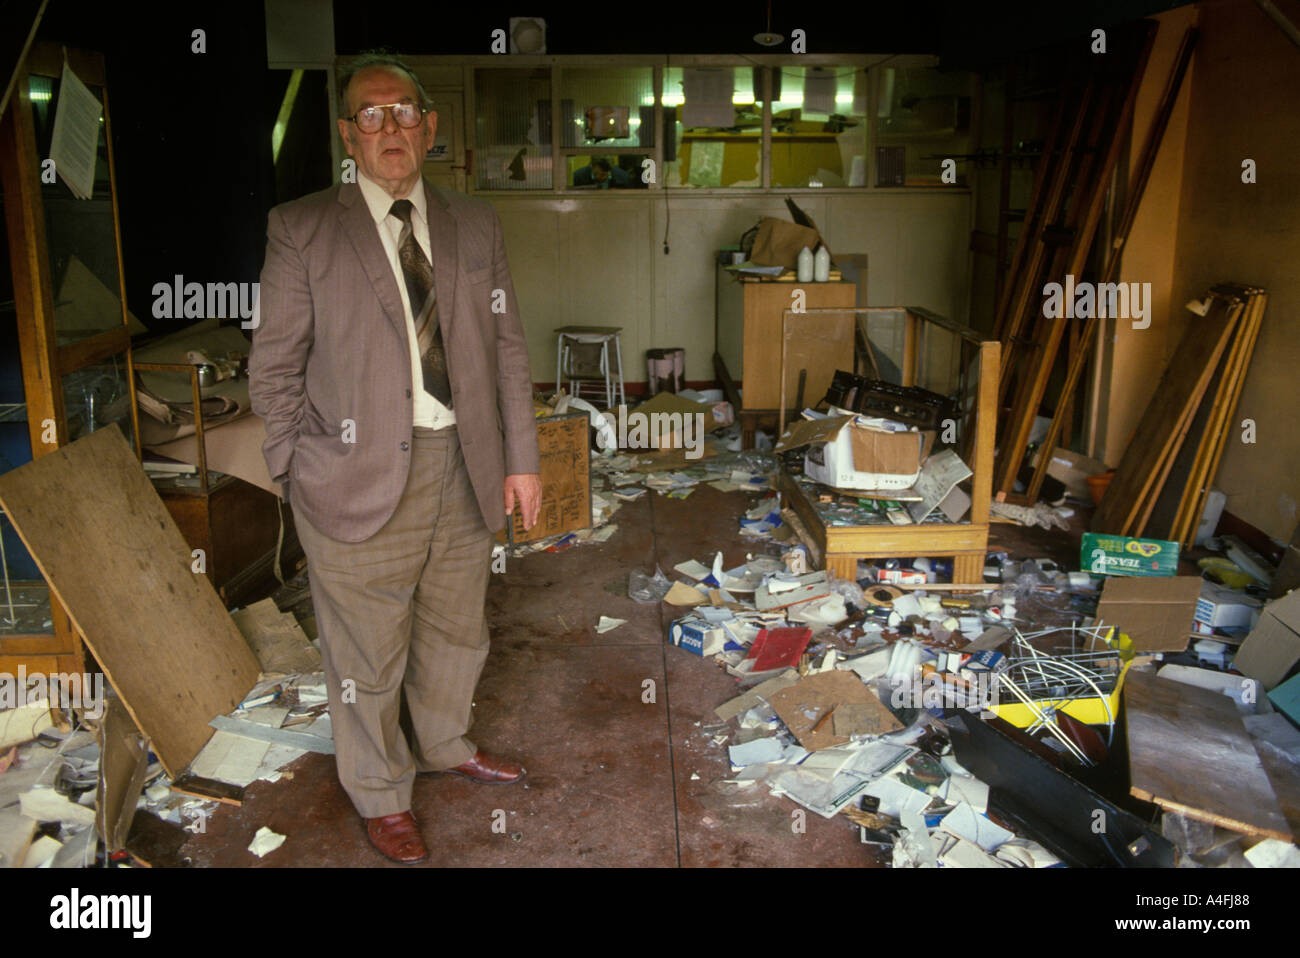 Émeutes de Toxteth Liverpool 8 juillet 1981 Boutique et propriétaire le matin après les émeutes, ses locaux ont été complètement détruits et pillés. Années 1980 Royaume-Uni Banque D'Images